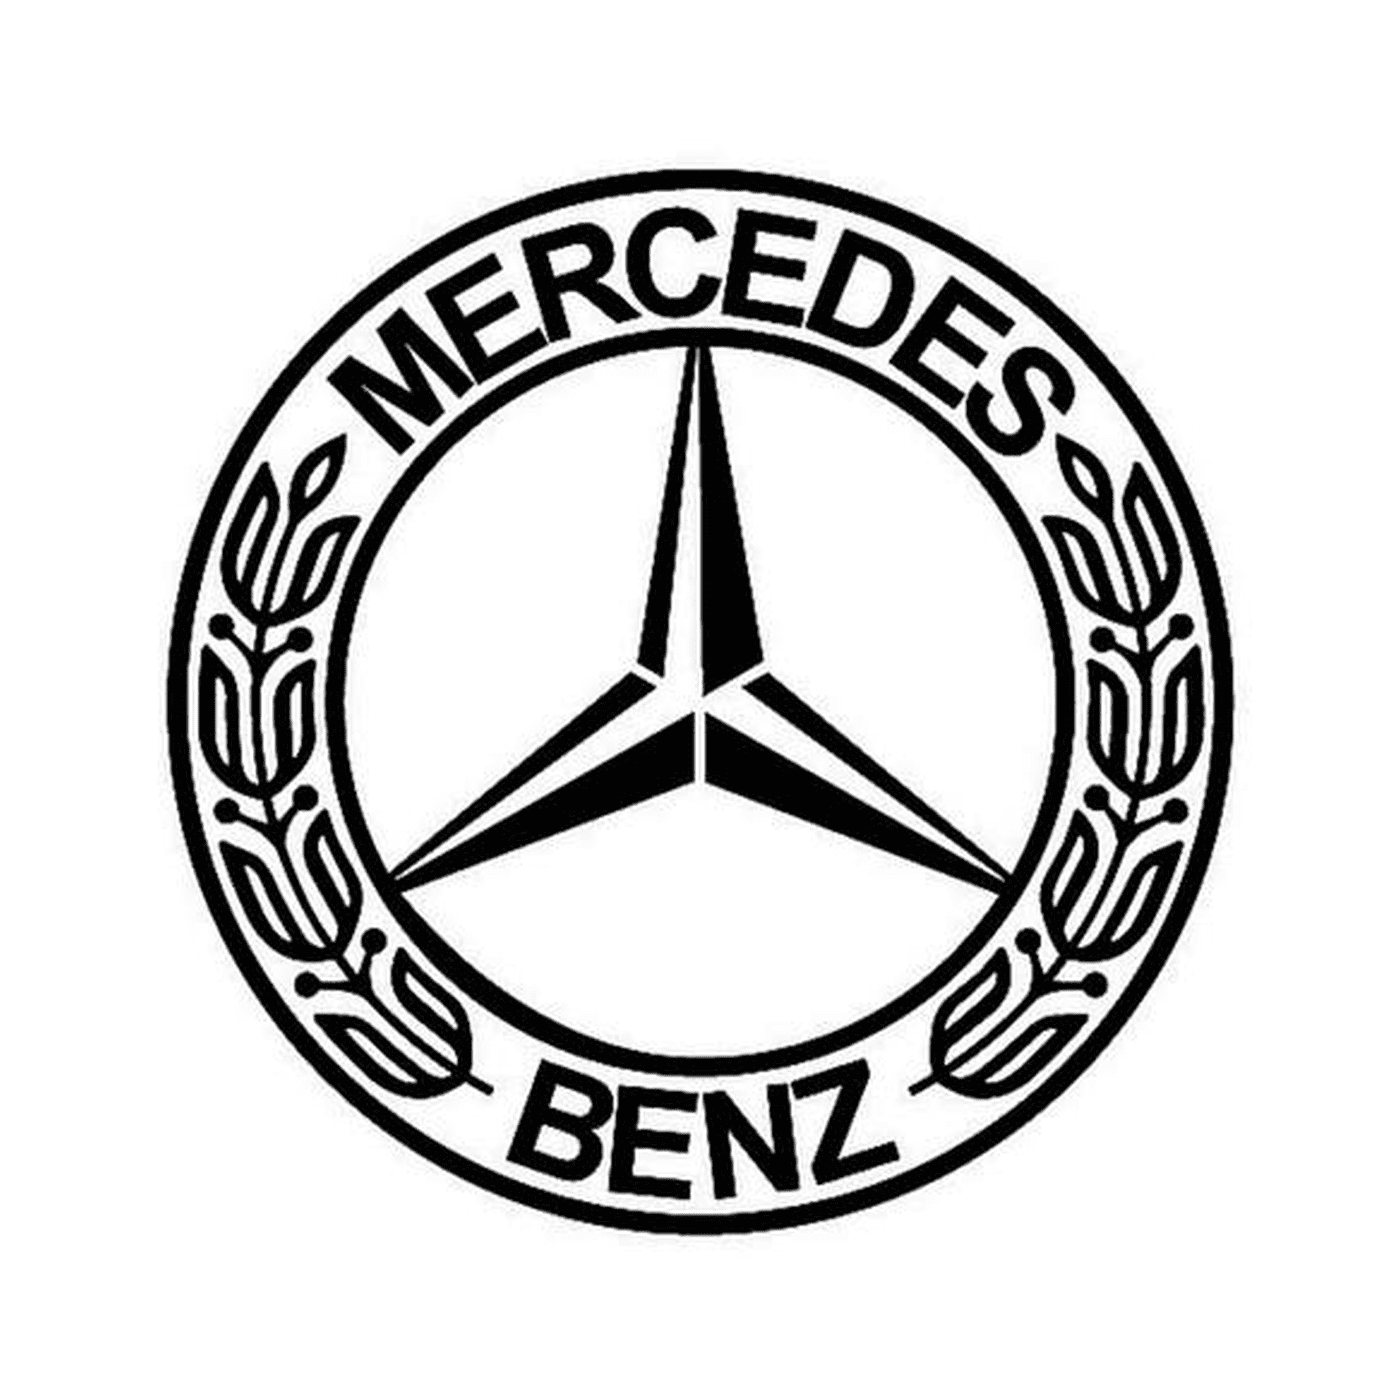  Logotipo distintivo da Mercedes 